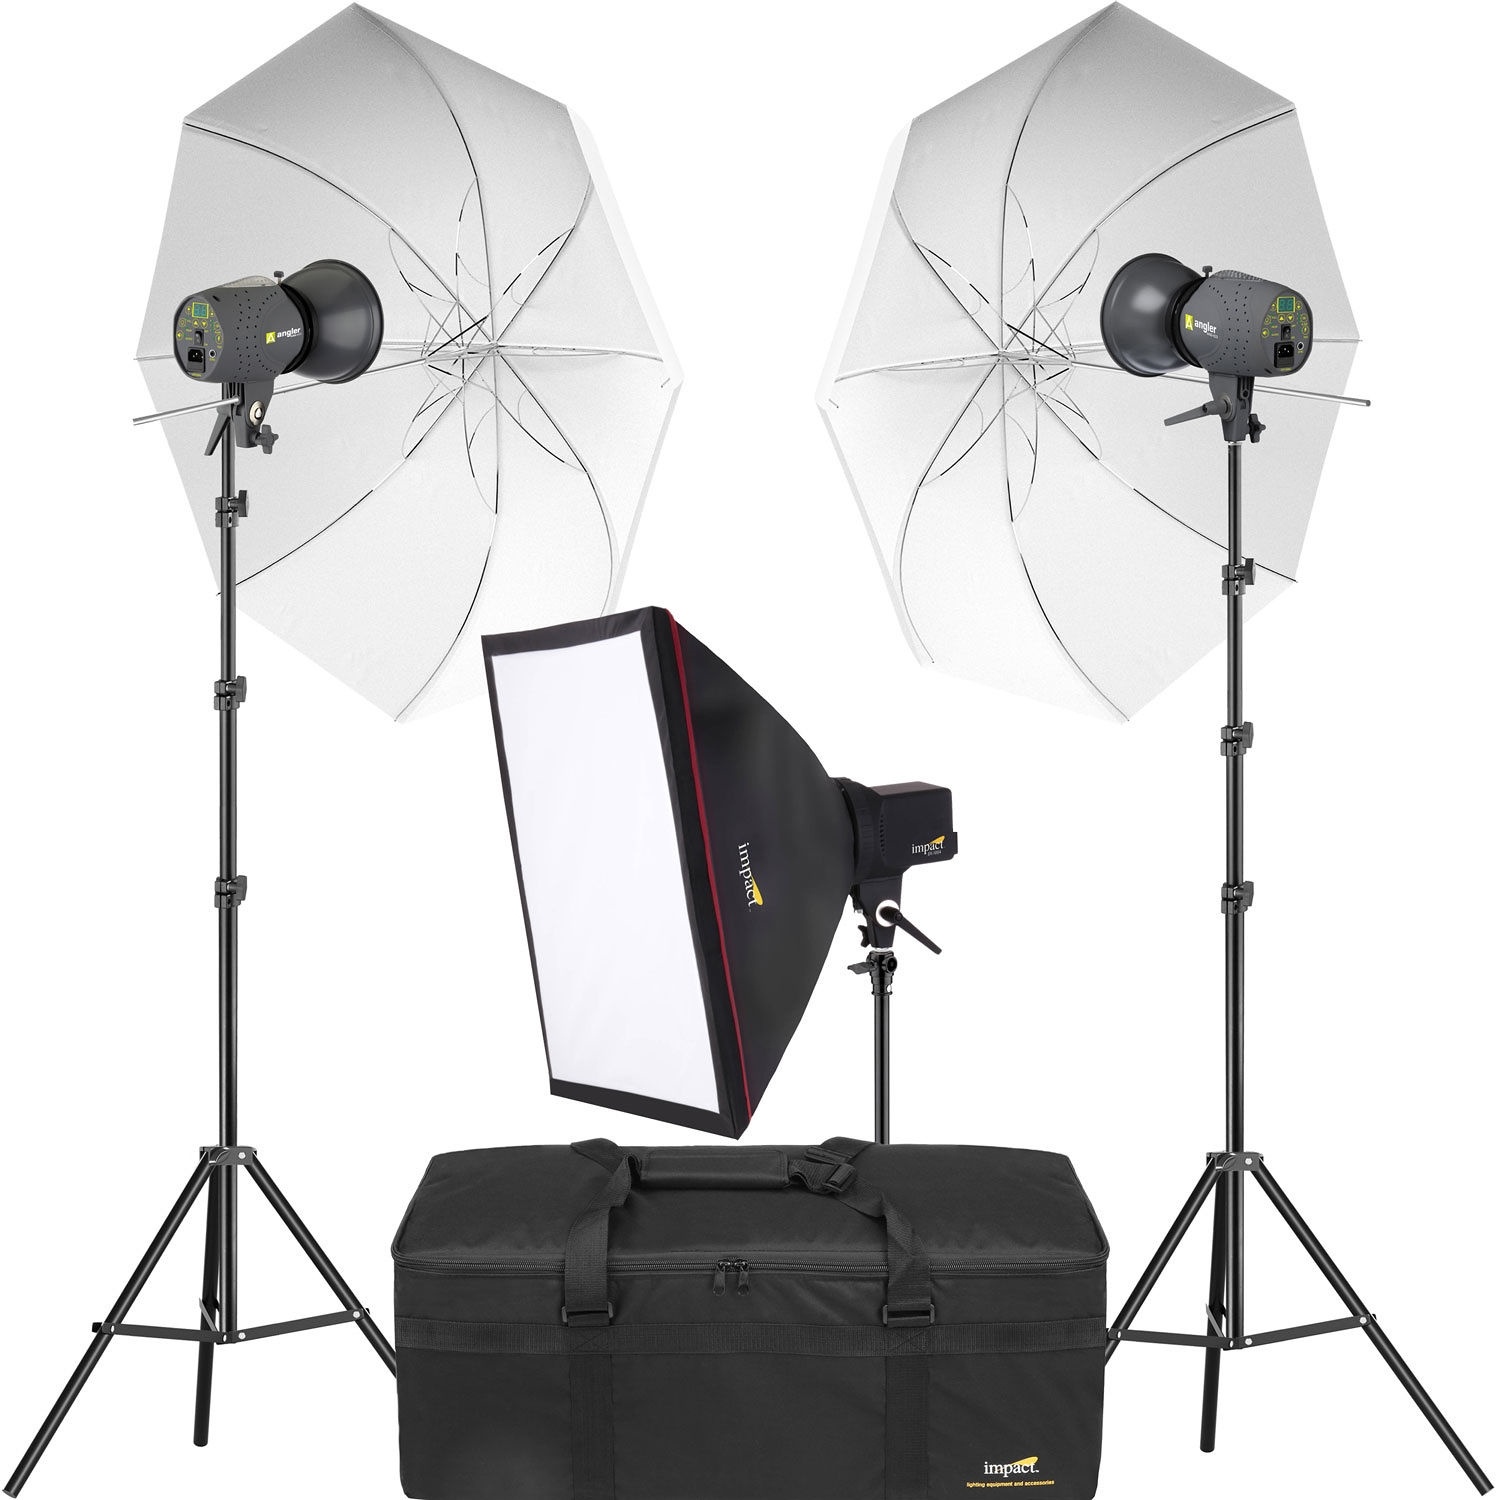 Angler 3-Monolight Portrait Backlight Kit with Bag